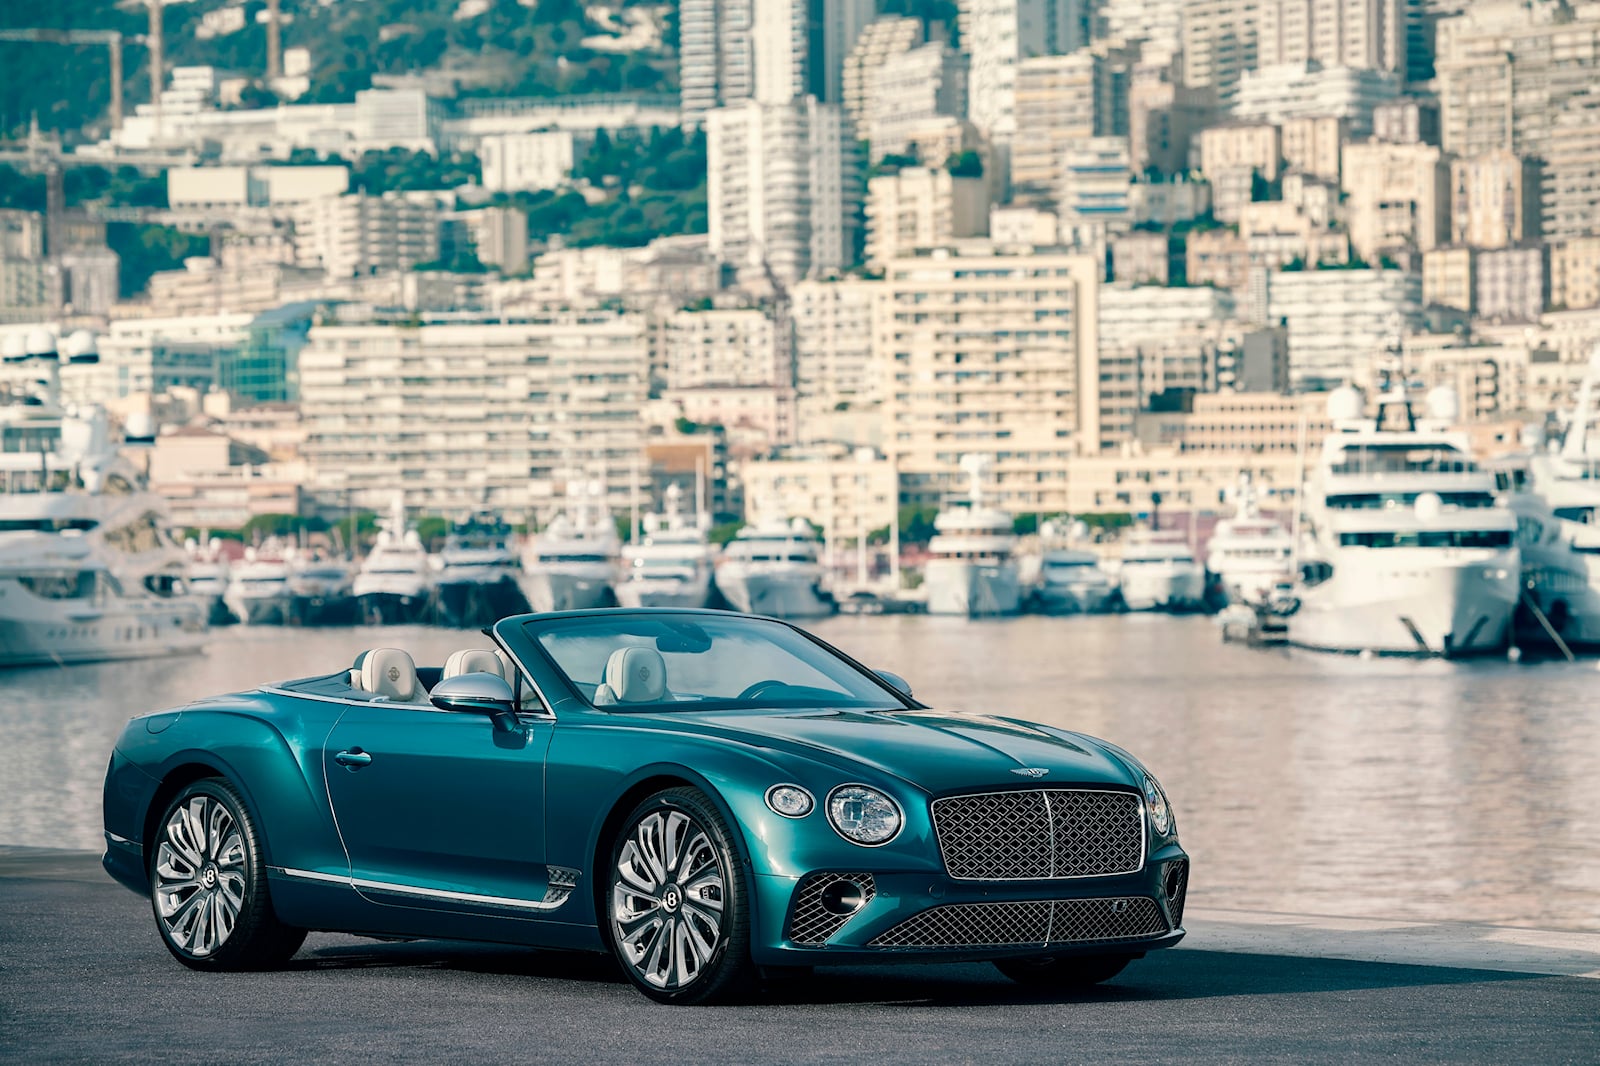 «Коллекция Mulliner Riviera показывает, как Bentley отреагировал на высокий спрос клиентов на персонализацию и индивидуальную эксклюзивность», — сказал Балаш Рооз, региональный директор Bentley Europe. «Понимание Bentley Monaco мира яхтинга, ключевое